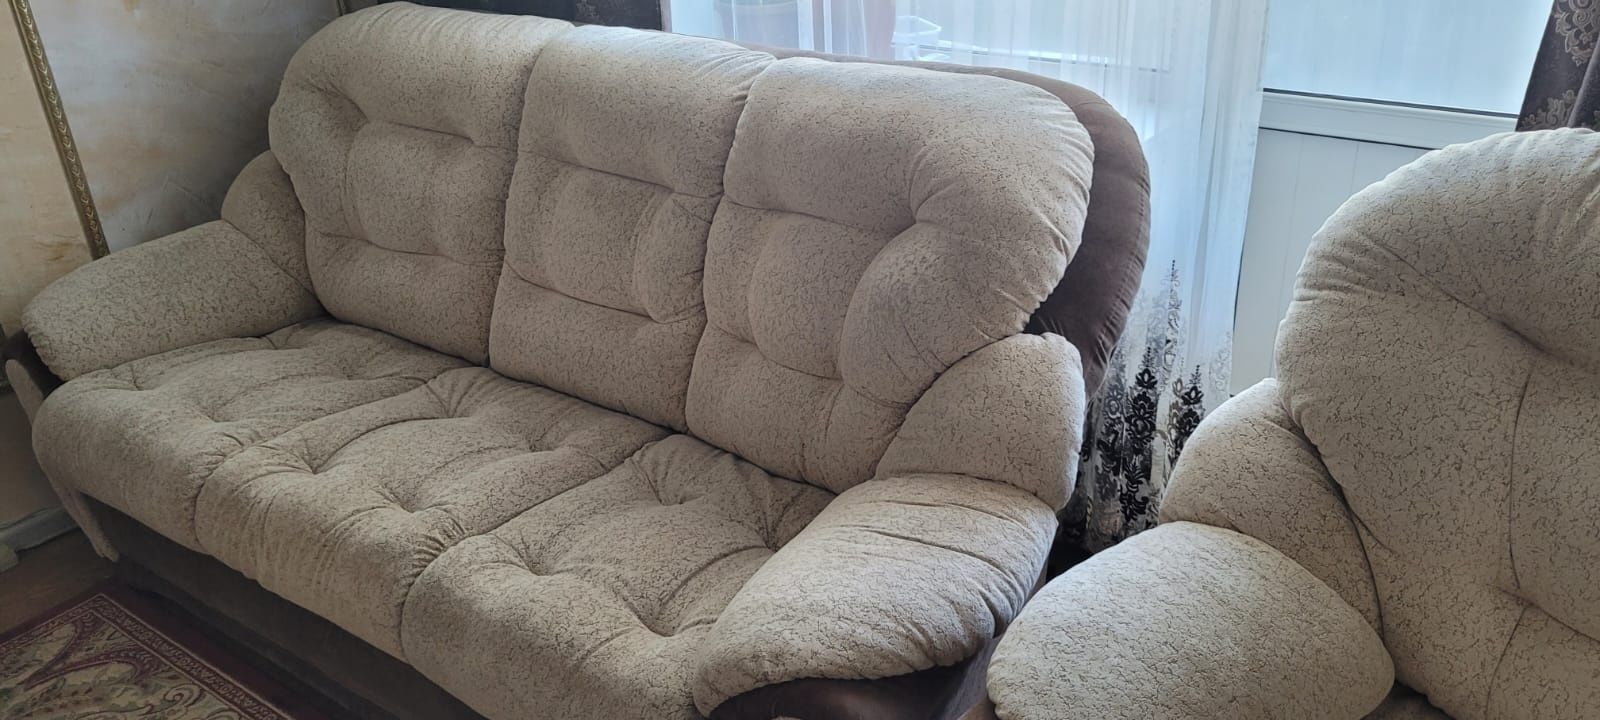 Продаётся раскладной диван и 1 кресло